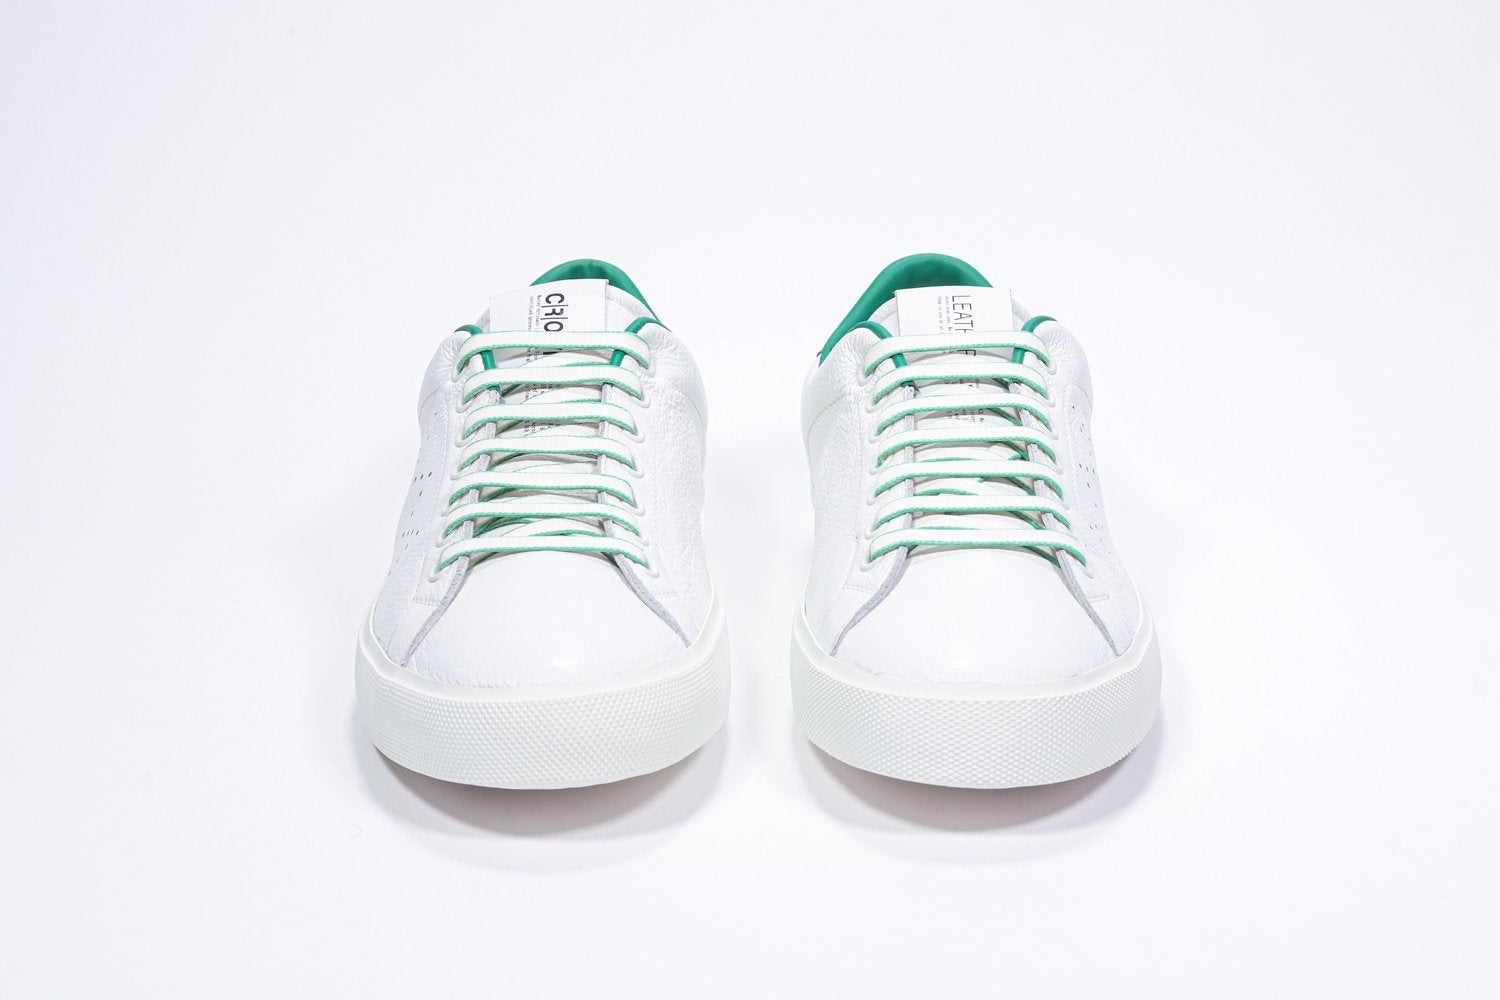 Vista frontale di BASSE  sneaker  bianco con dettagli verdi e logo della corona traforato sulla tomaia. Tomaia in pelle e suola in gomma bianca.